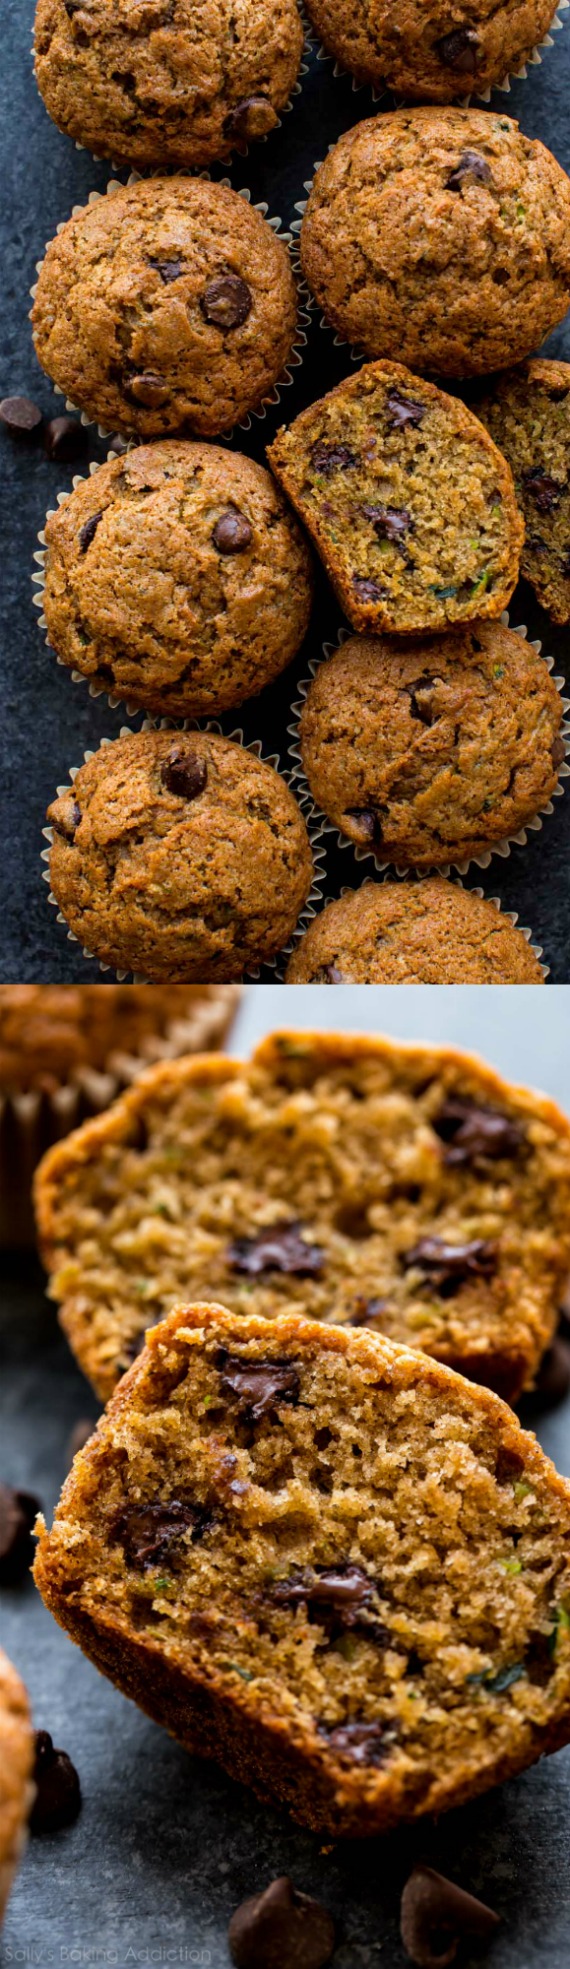 Les MEILLEURS muffins de courgettes! Recette primée, pleine de saveur, super moelleuse, et vous ne pouvez pas goûter les courgettes! Recette sur sallysbakingaddiction.com